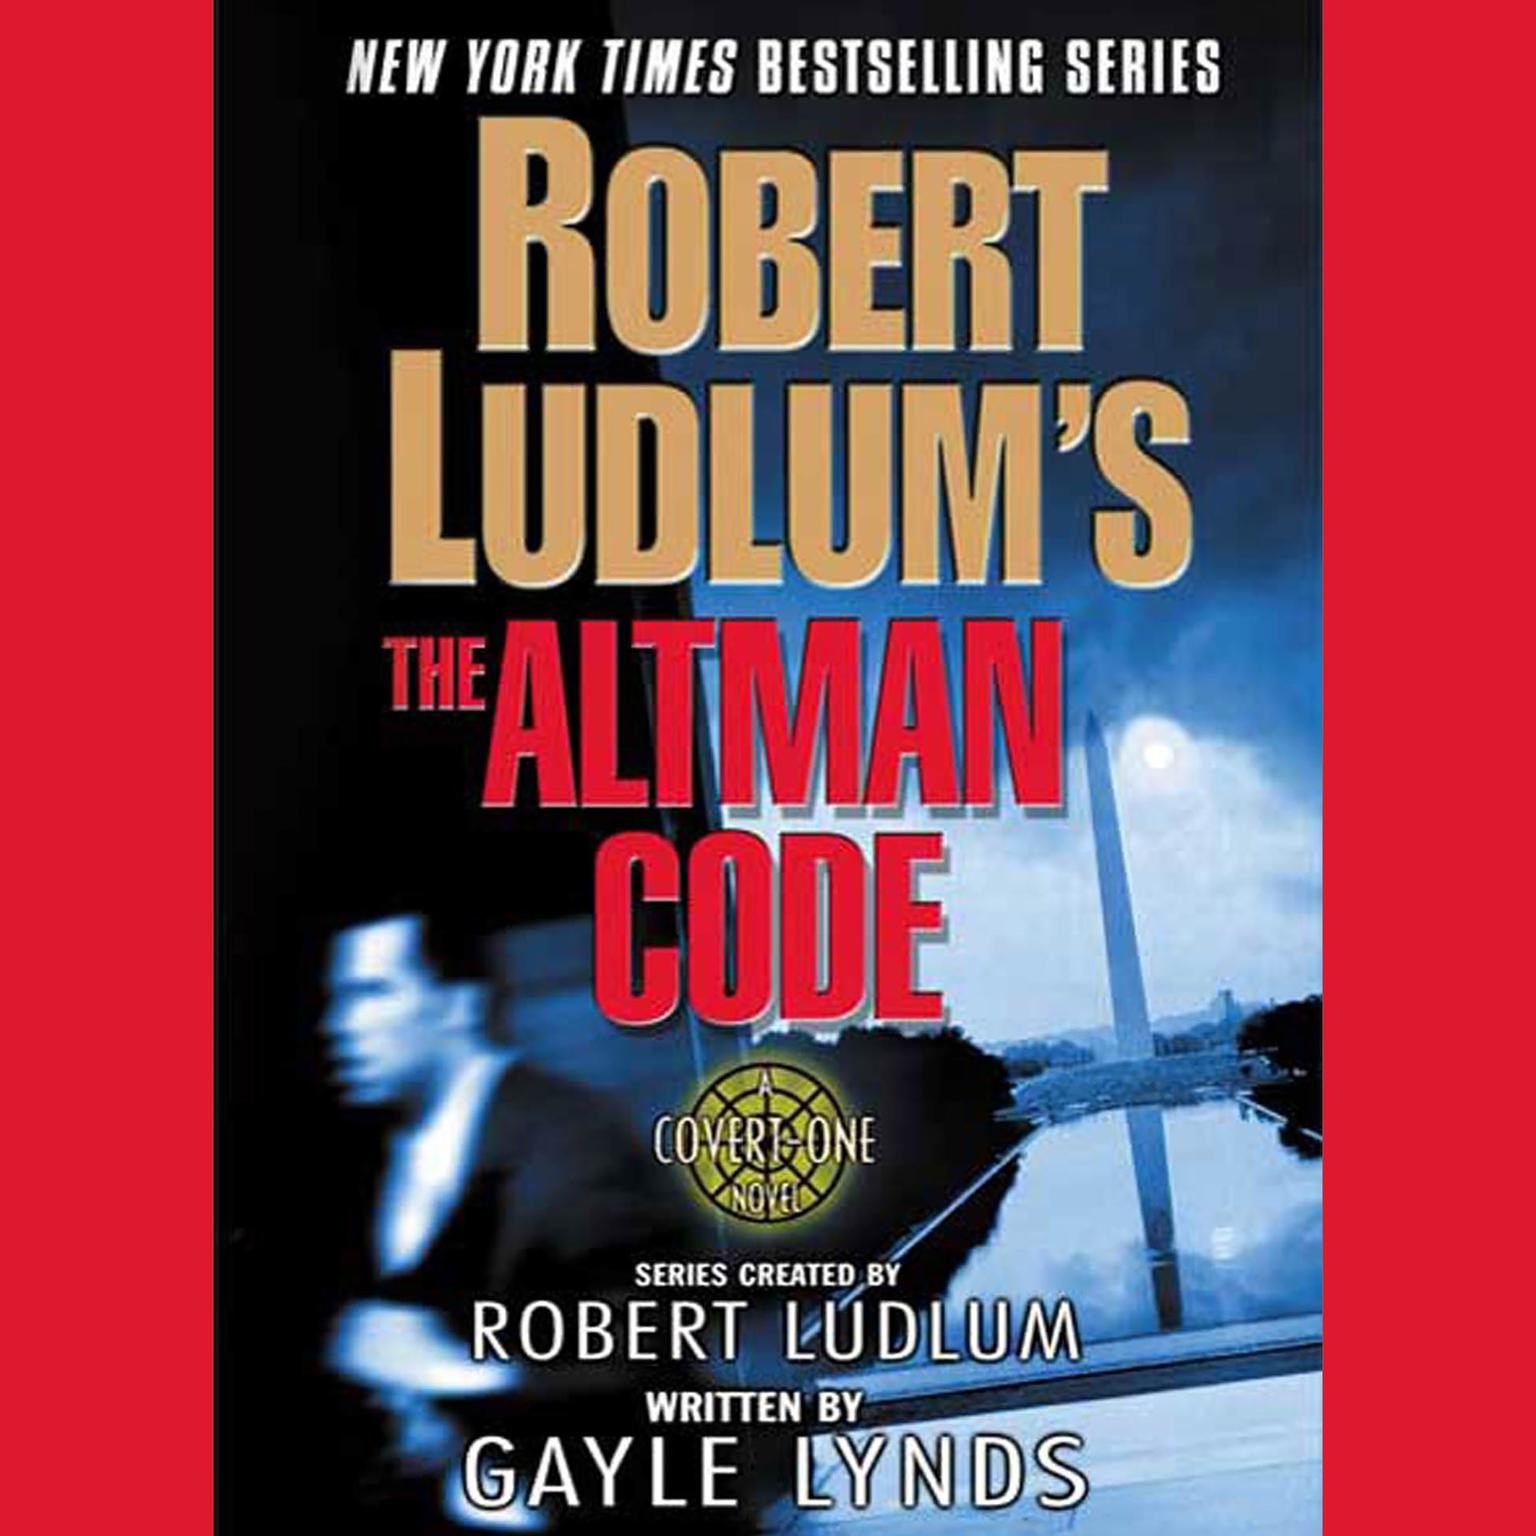 Robert Ludlums The Altman Code (Abridged): A Covert-One Novel Audiobook, by Robert Ludlum